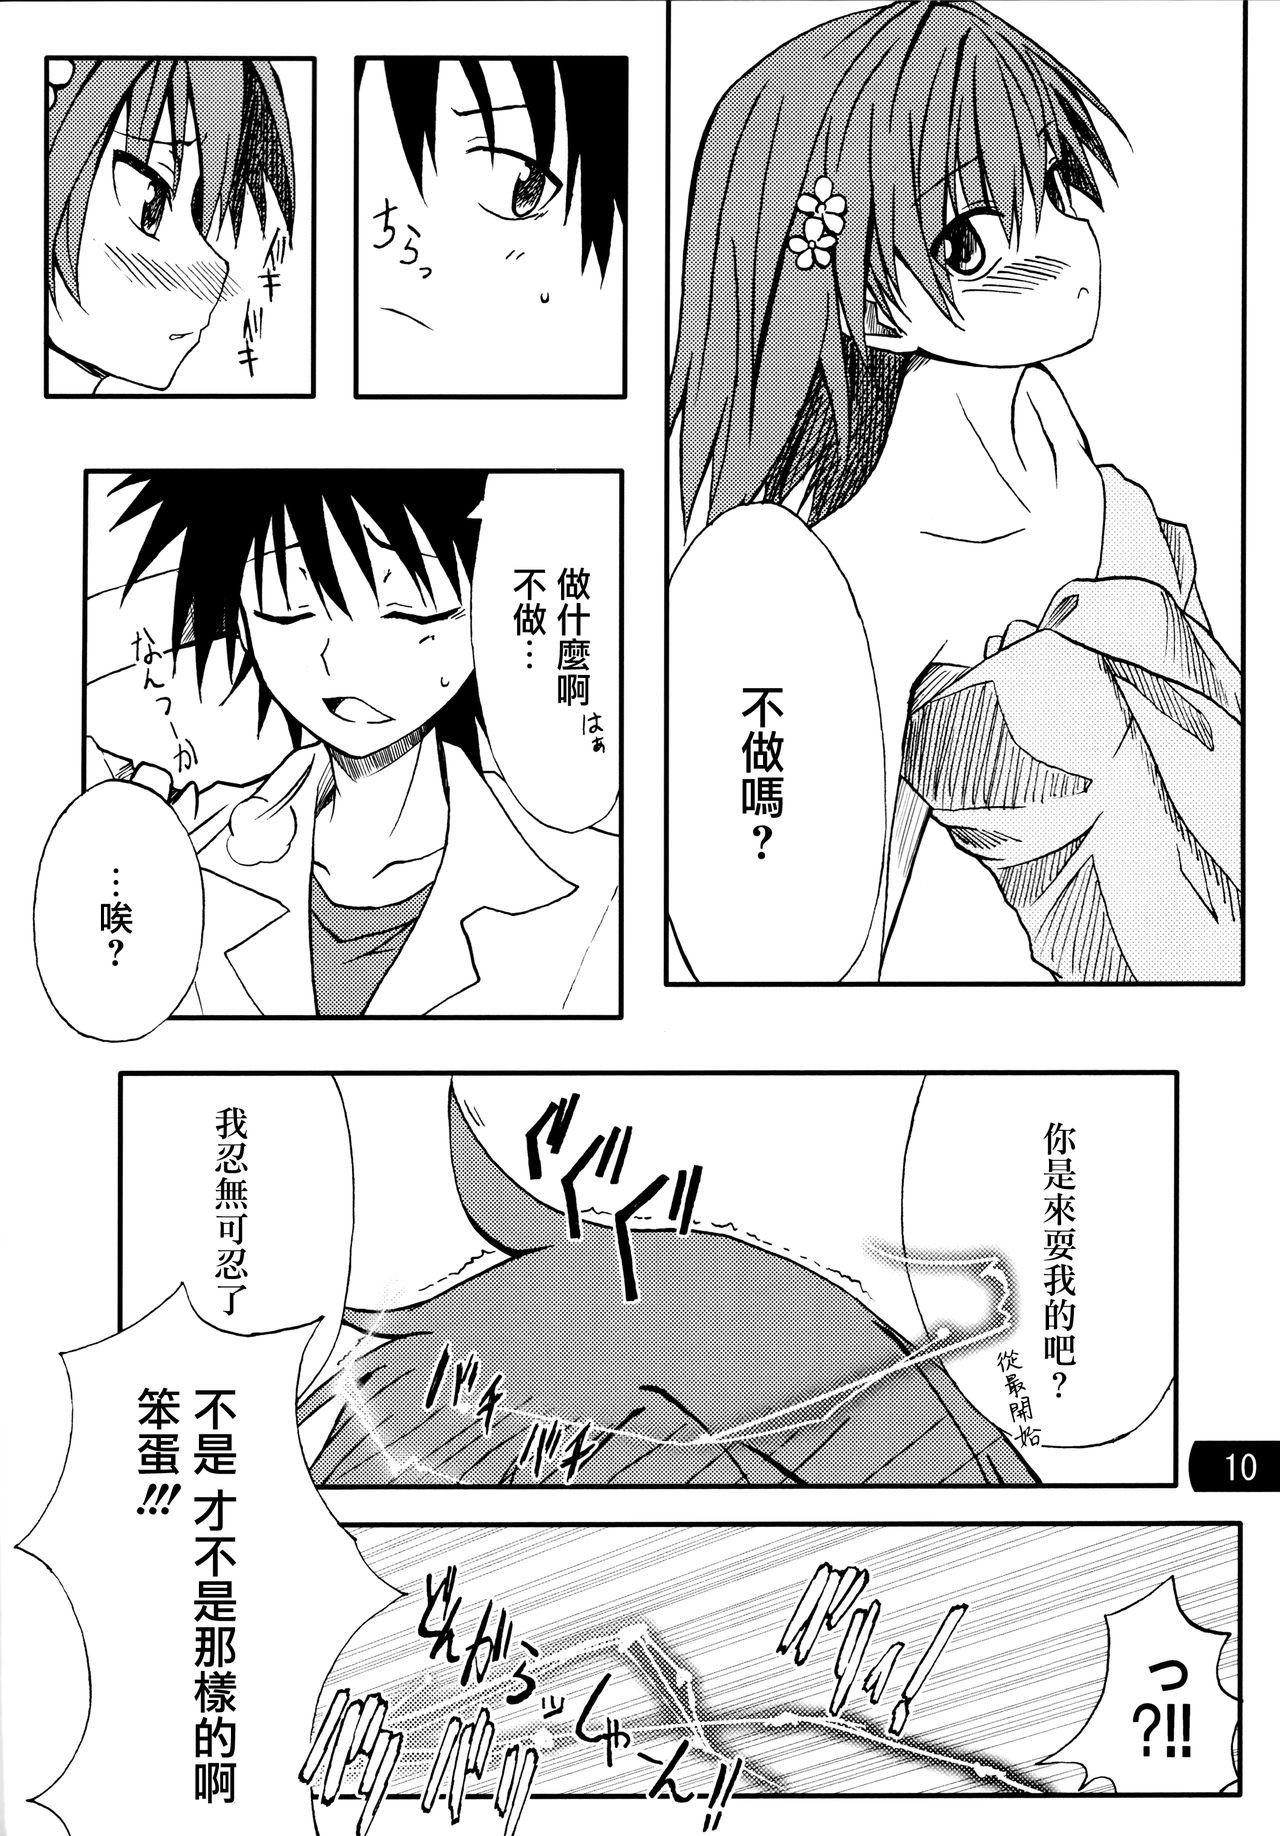 Gay Public Toaru mousou no chou denji hon 02 - Toaru kagaku no railgun Amigo - Page 9